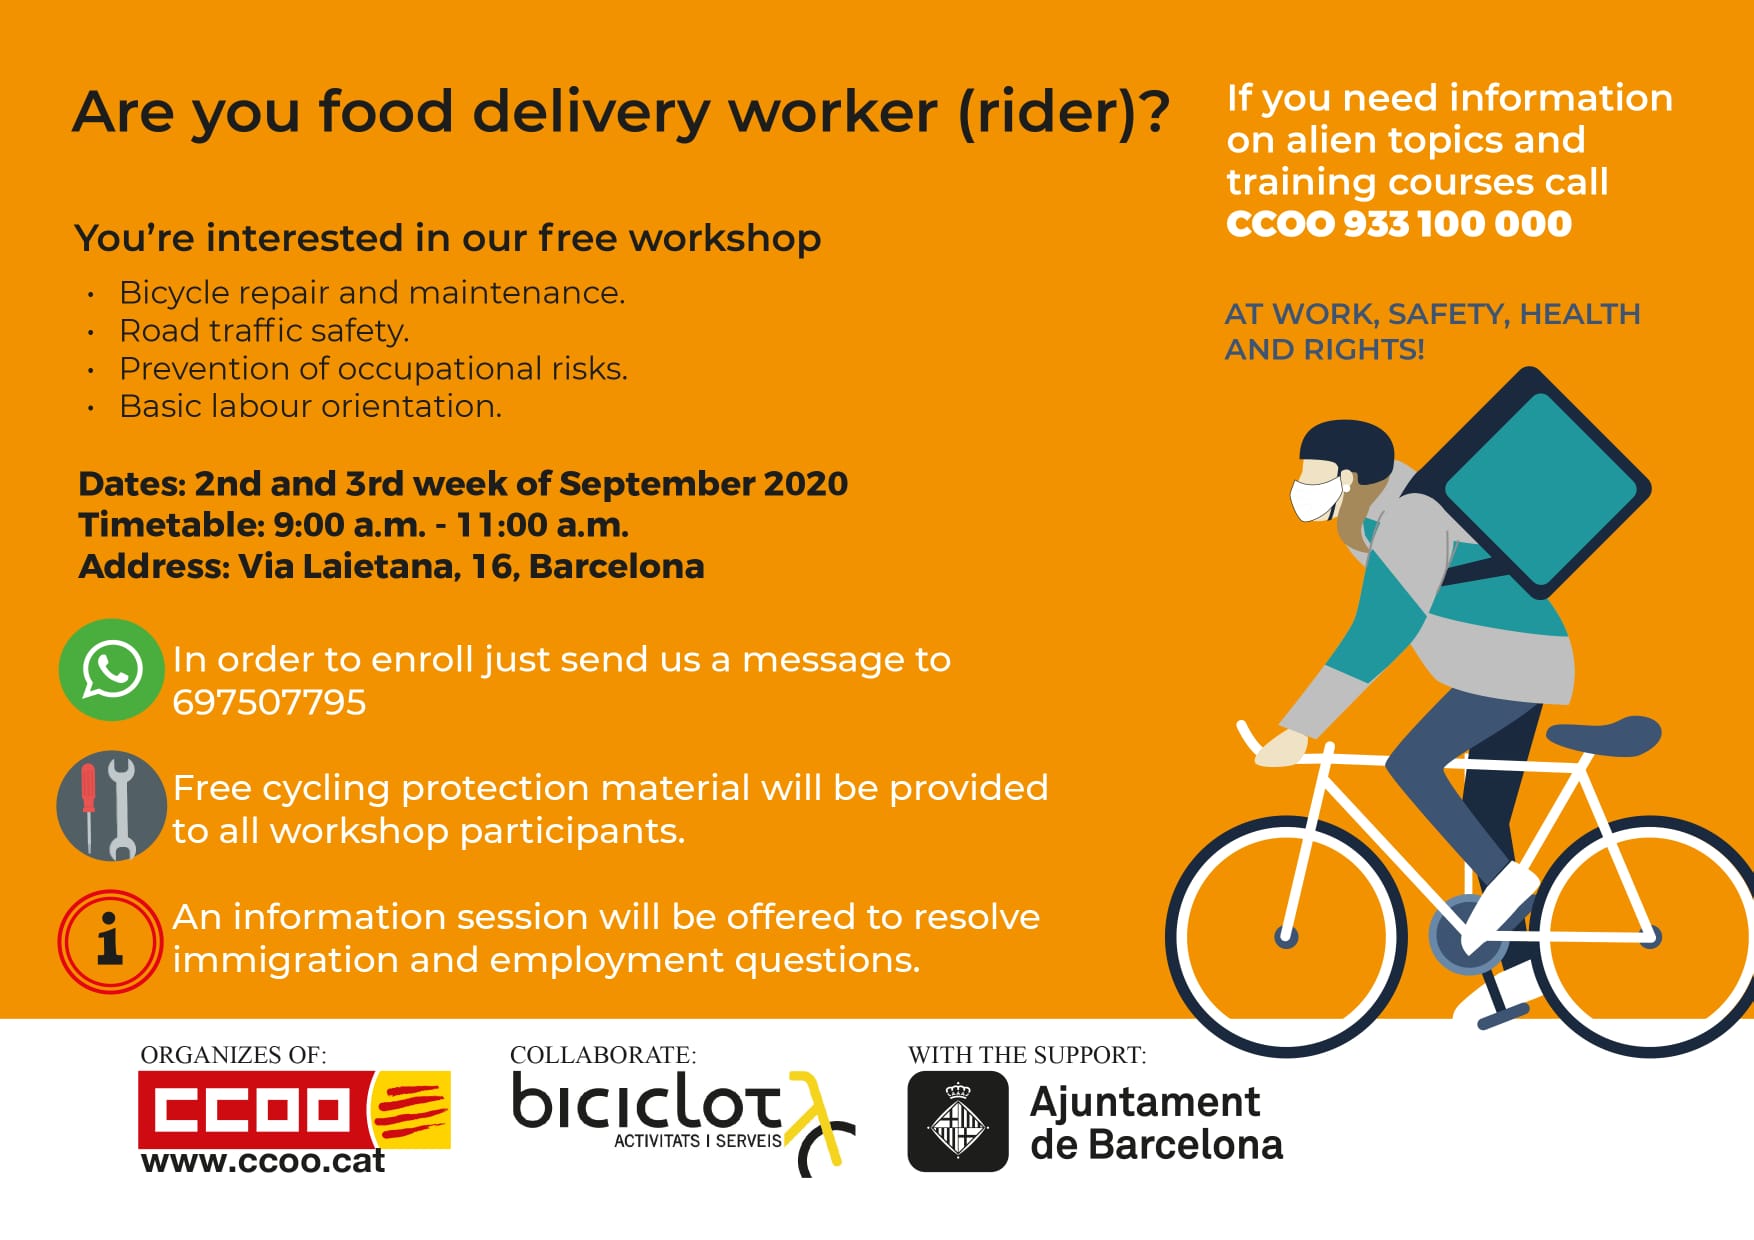 Ets treballador o treballadora de repartiment a domicili en bicicleta?